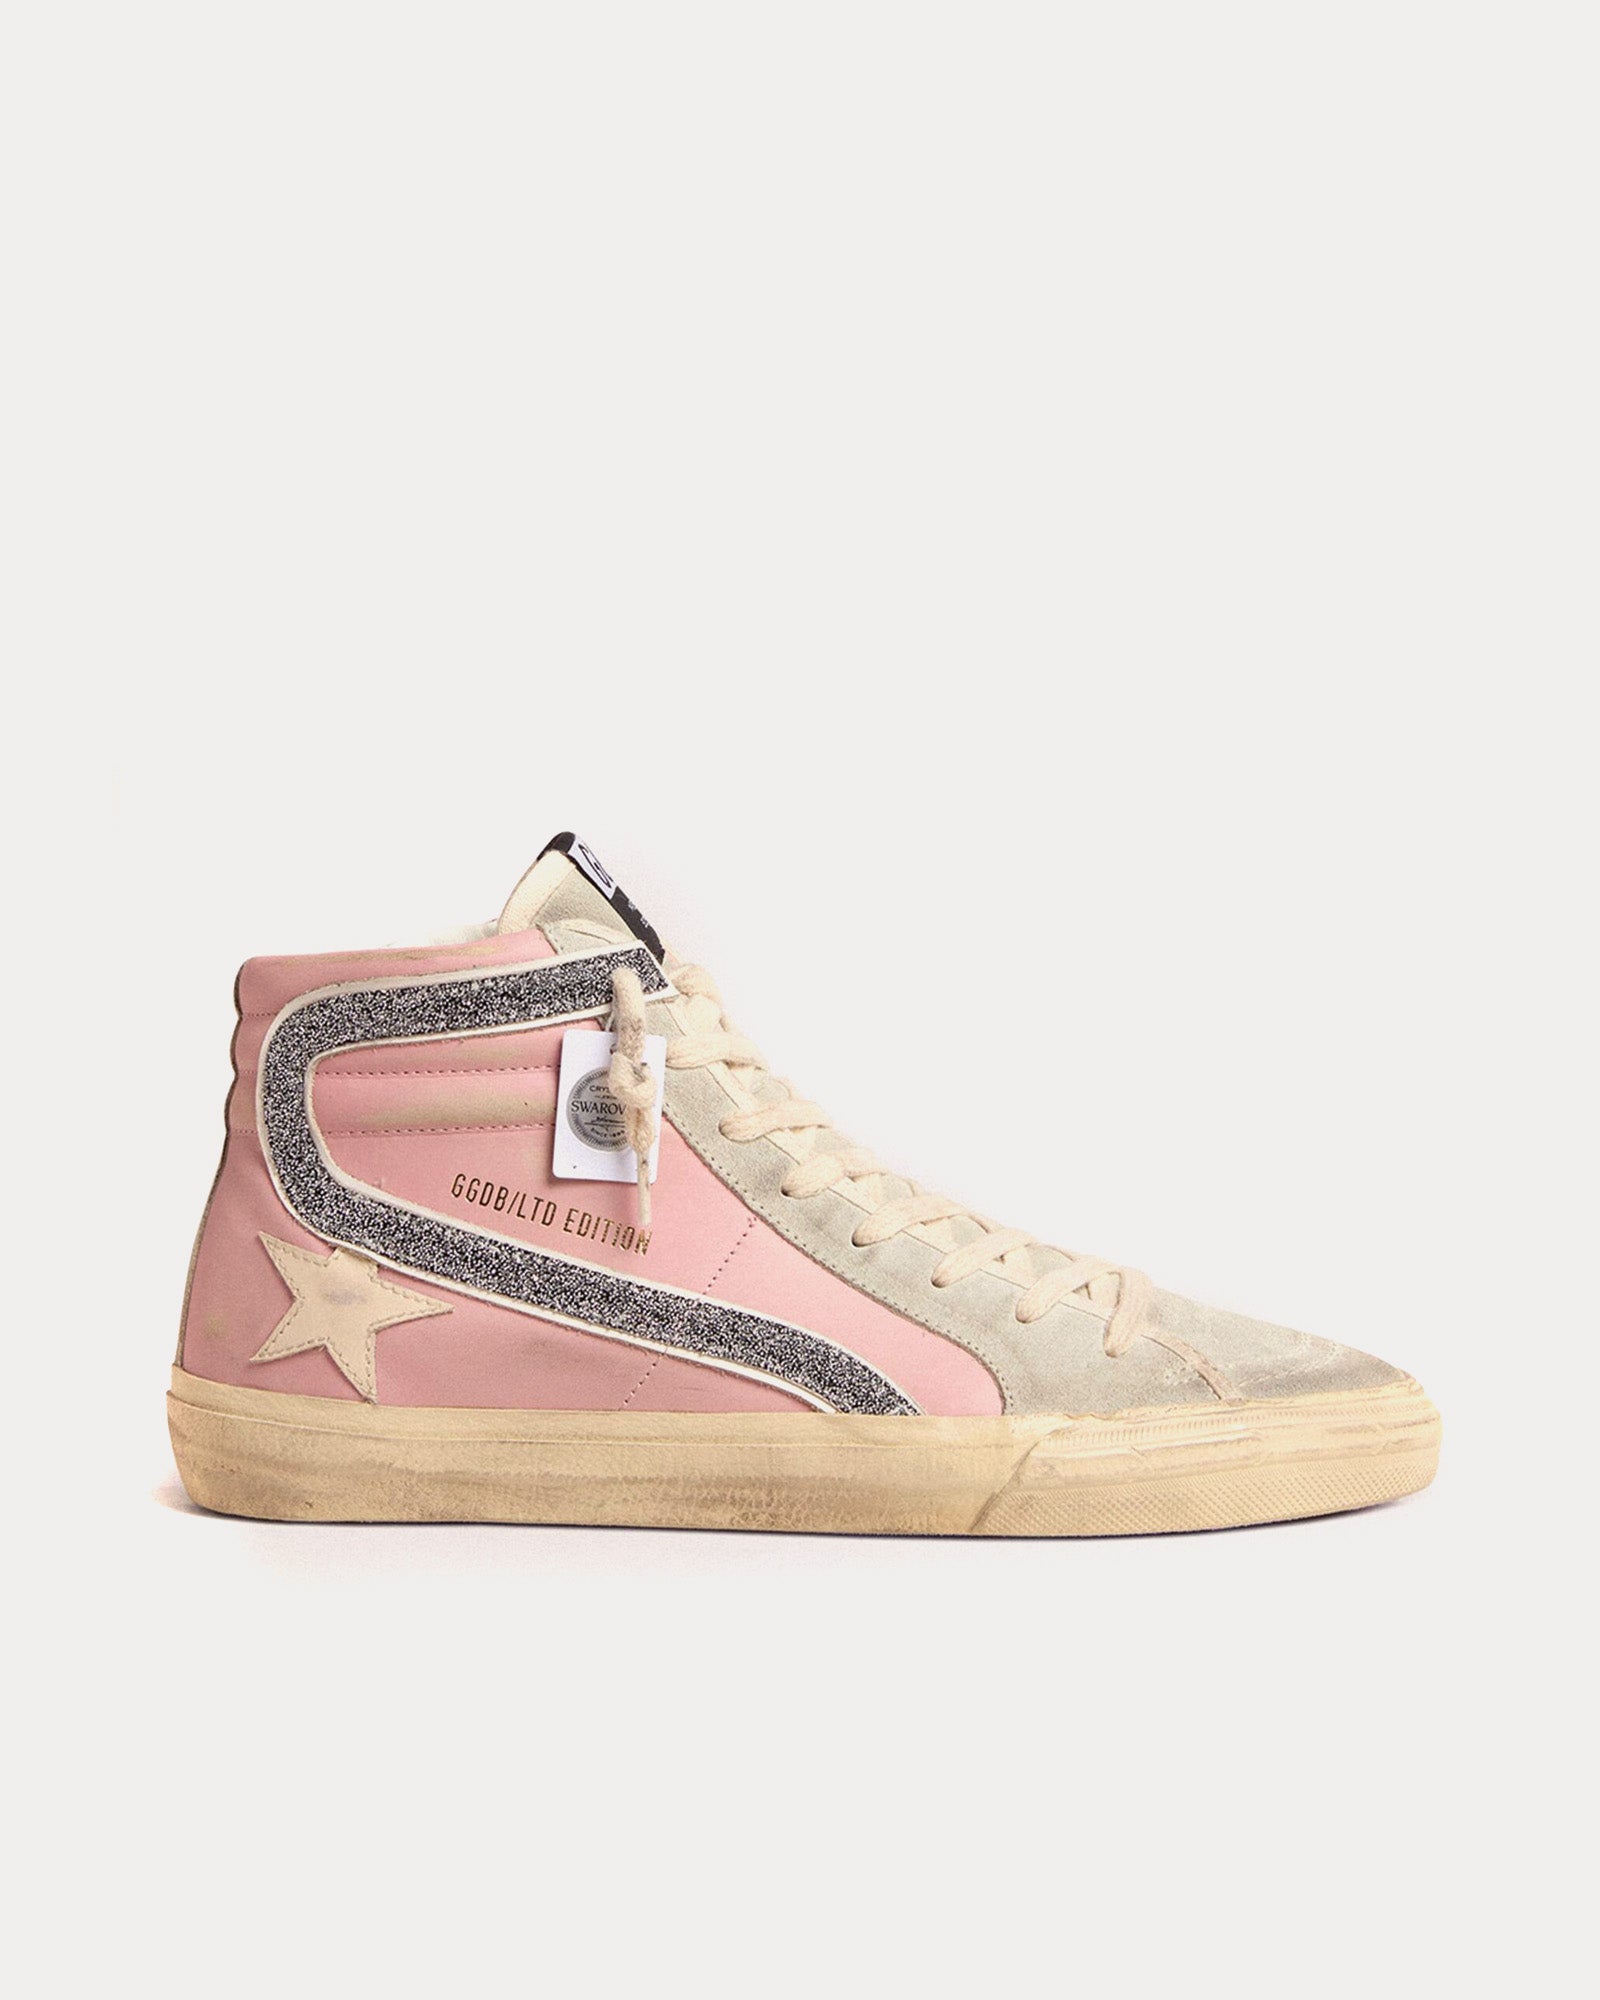 Golden Goose - Slide Slide LTD with Leather Star & Swarovski Crystal Flash Pink High Top Sneakers